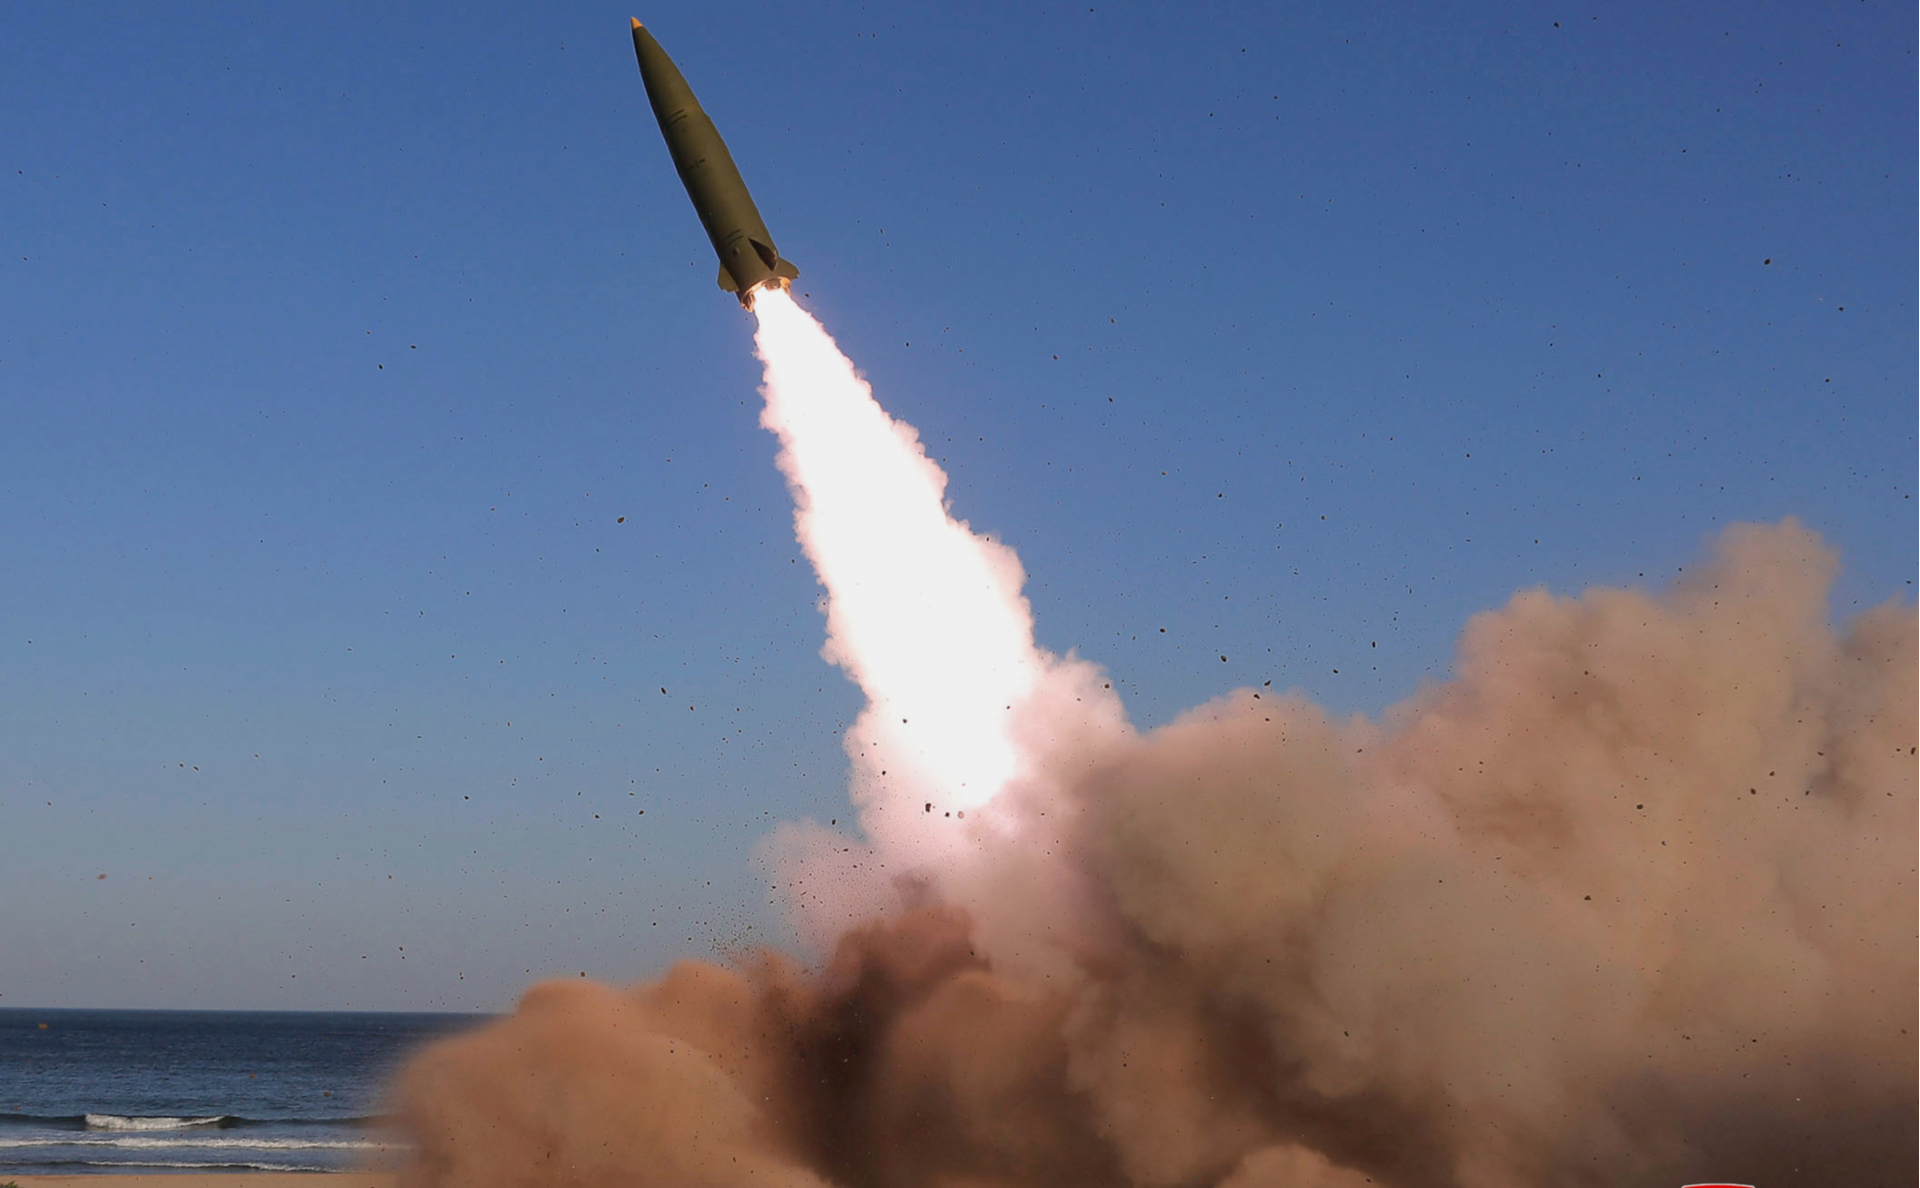 Южная Корея заявила о запуске КНДР двух снарядов в сторону Японского моря"/>













